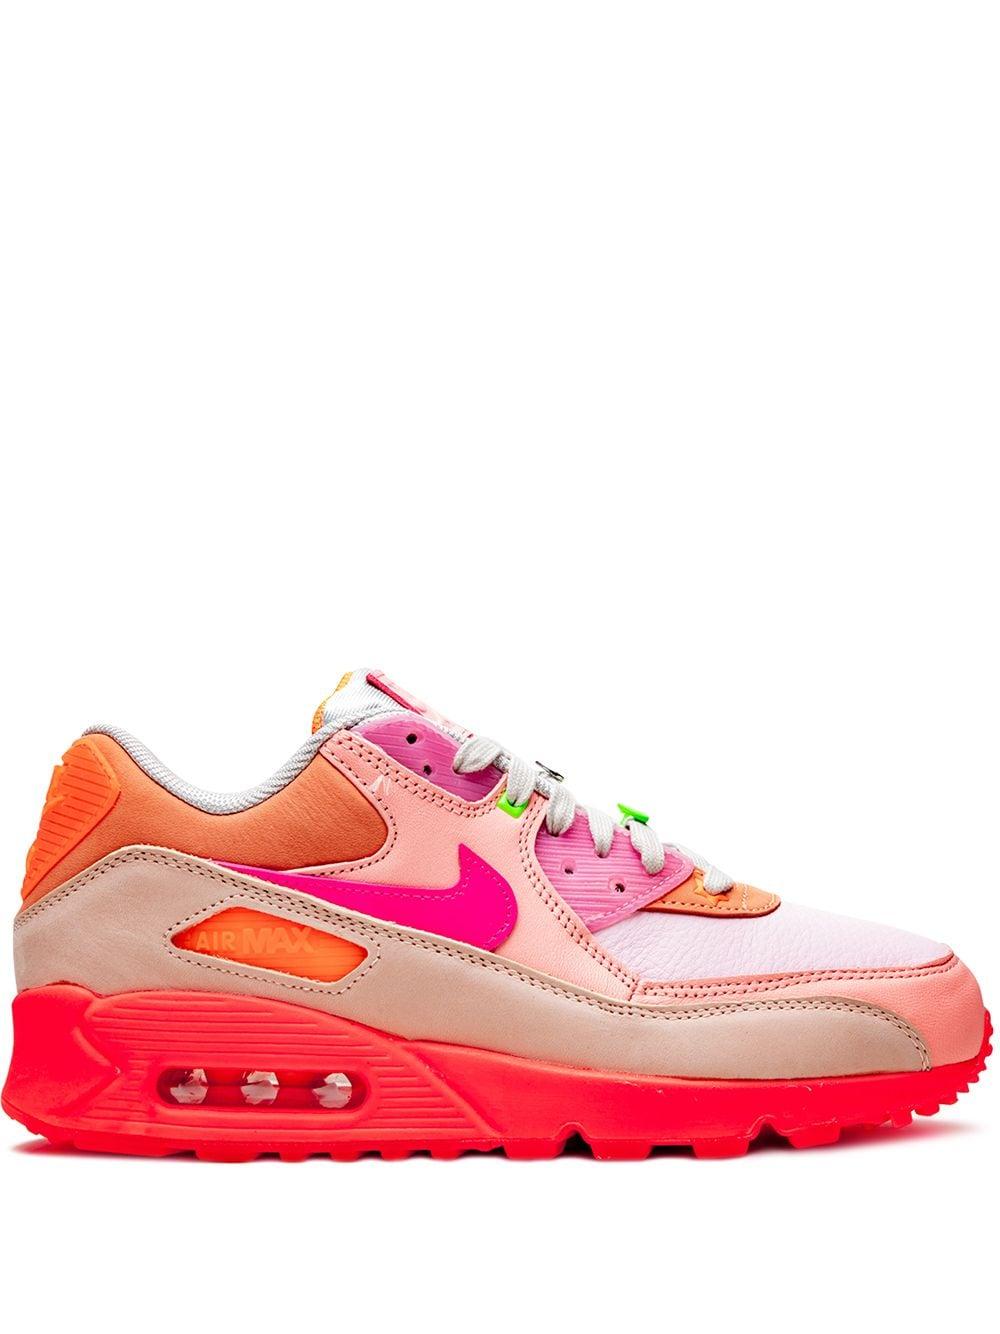 nike orange pink sneakers